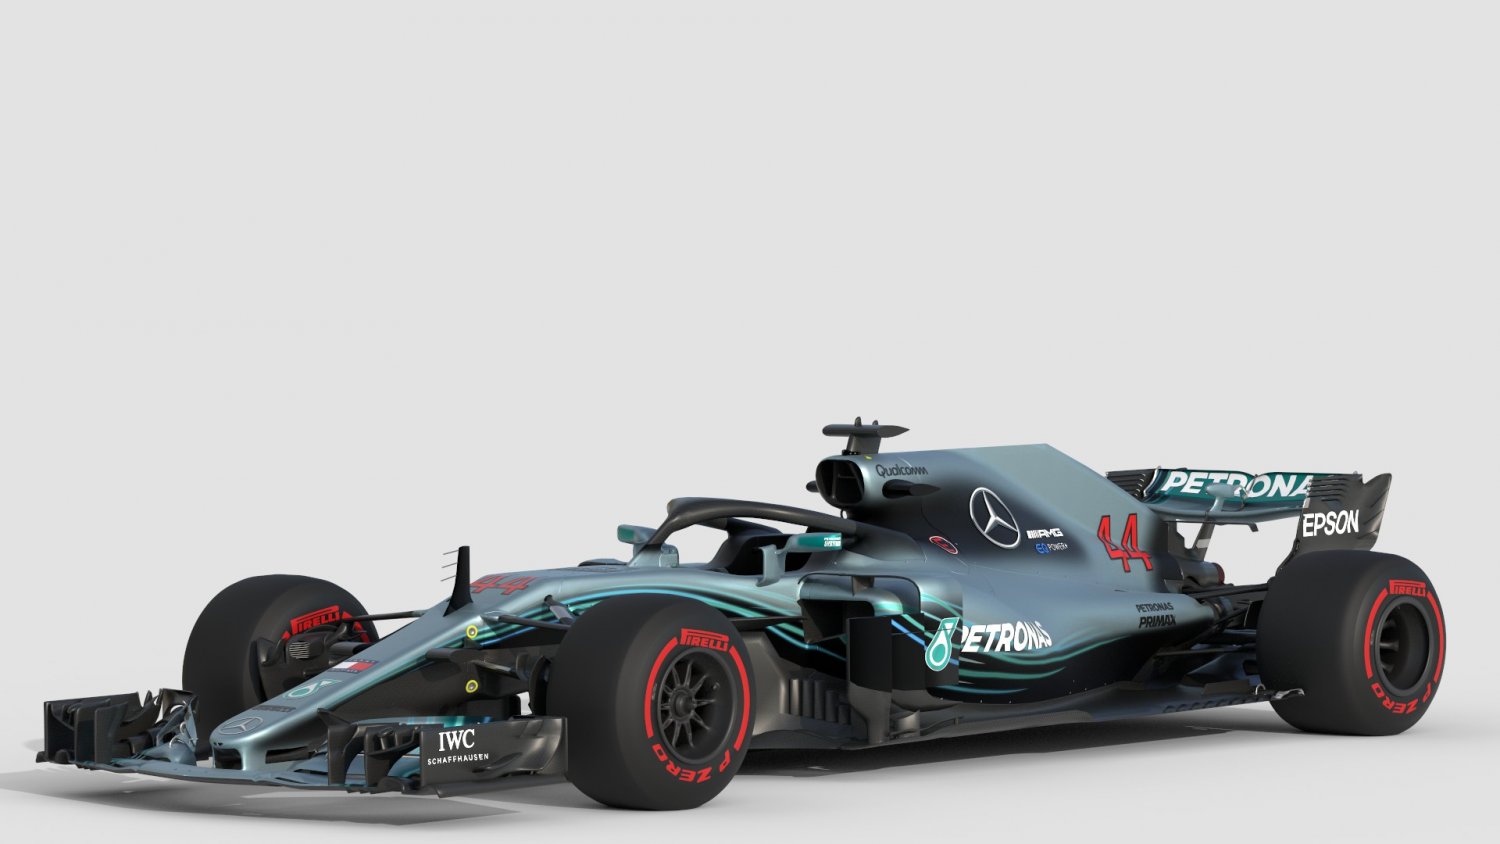 F1 Mercedes W09 2018 3D Model In Racing 3DExport